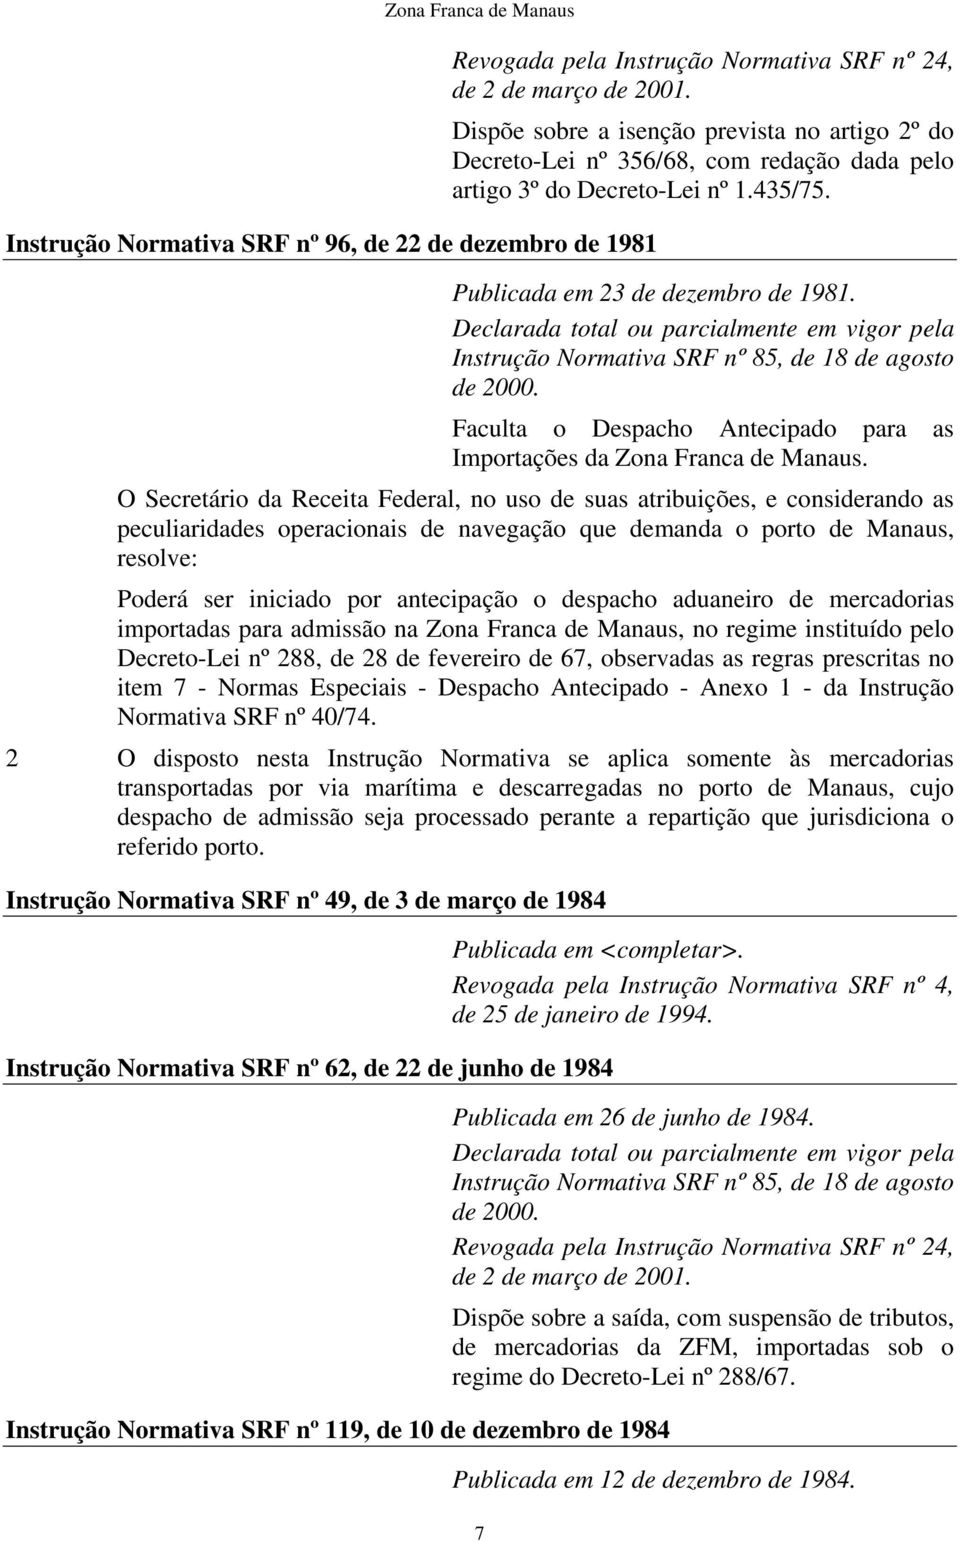 Declarada total ou parcialmente em vigor pela nstrução Normativa SRF nº 85, de 18 de agosto de 2000. Faculta o Despacho Antecipado para as mportações da Zona Franca de Manaus.